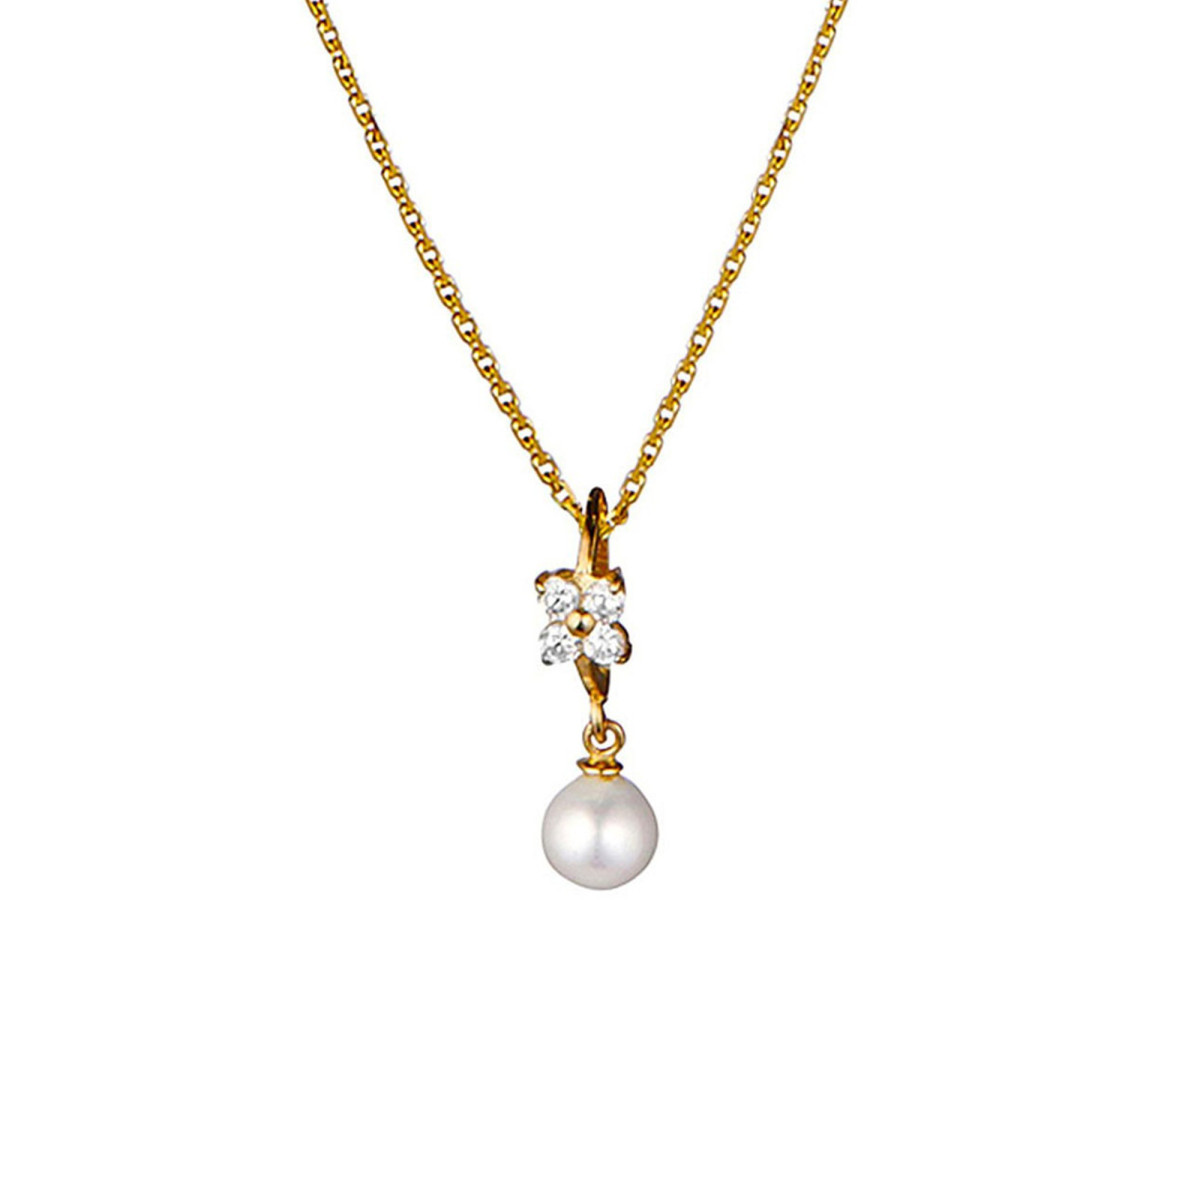 Pendentif Or Jaune, perle et oxydes de zirconium  "Gift" + chaîne argent doré offerte